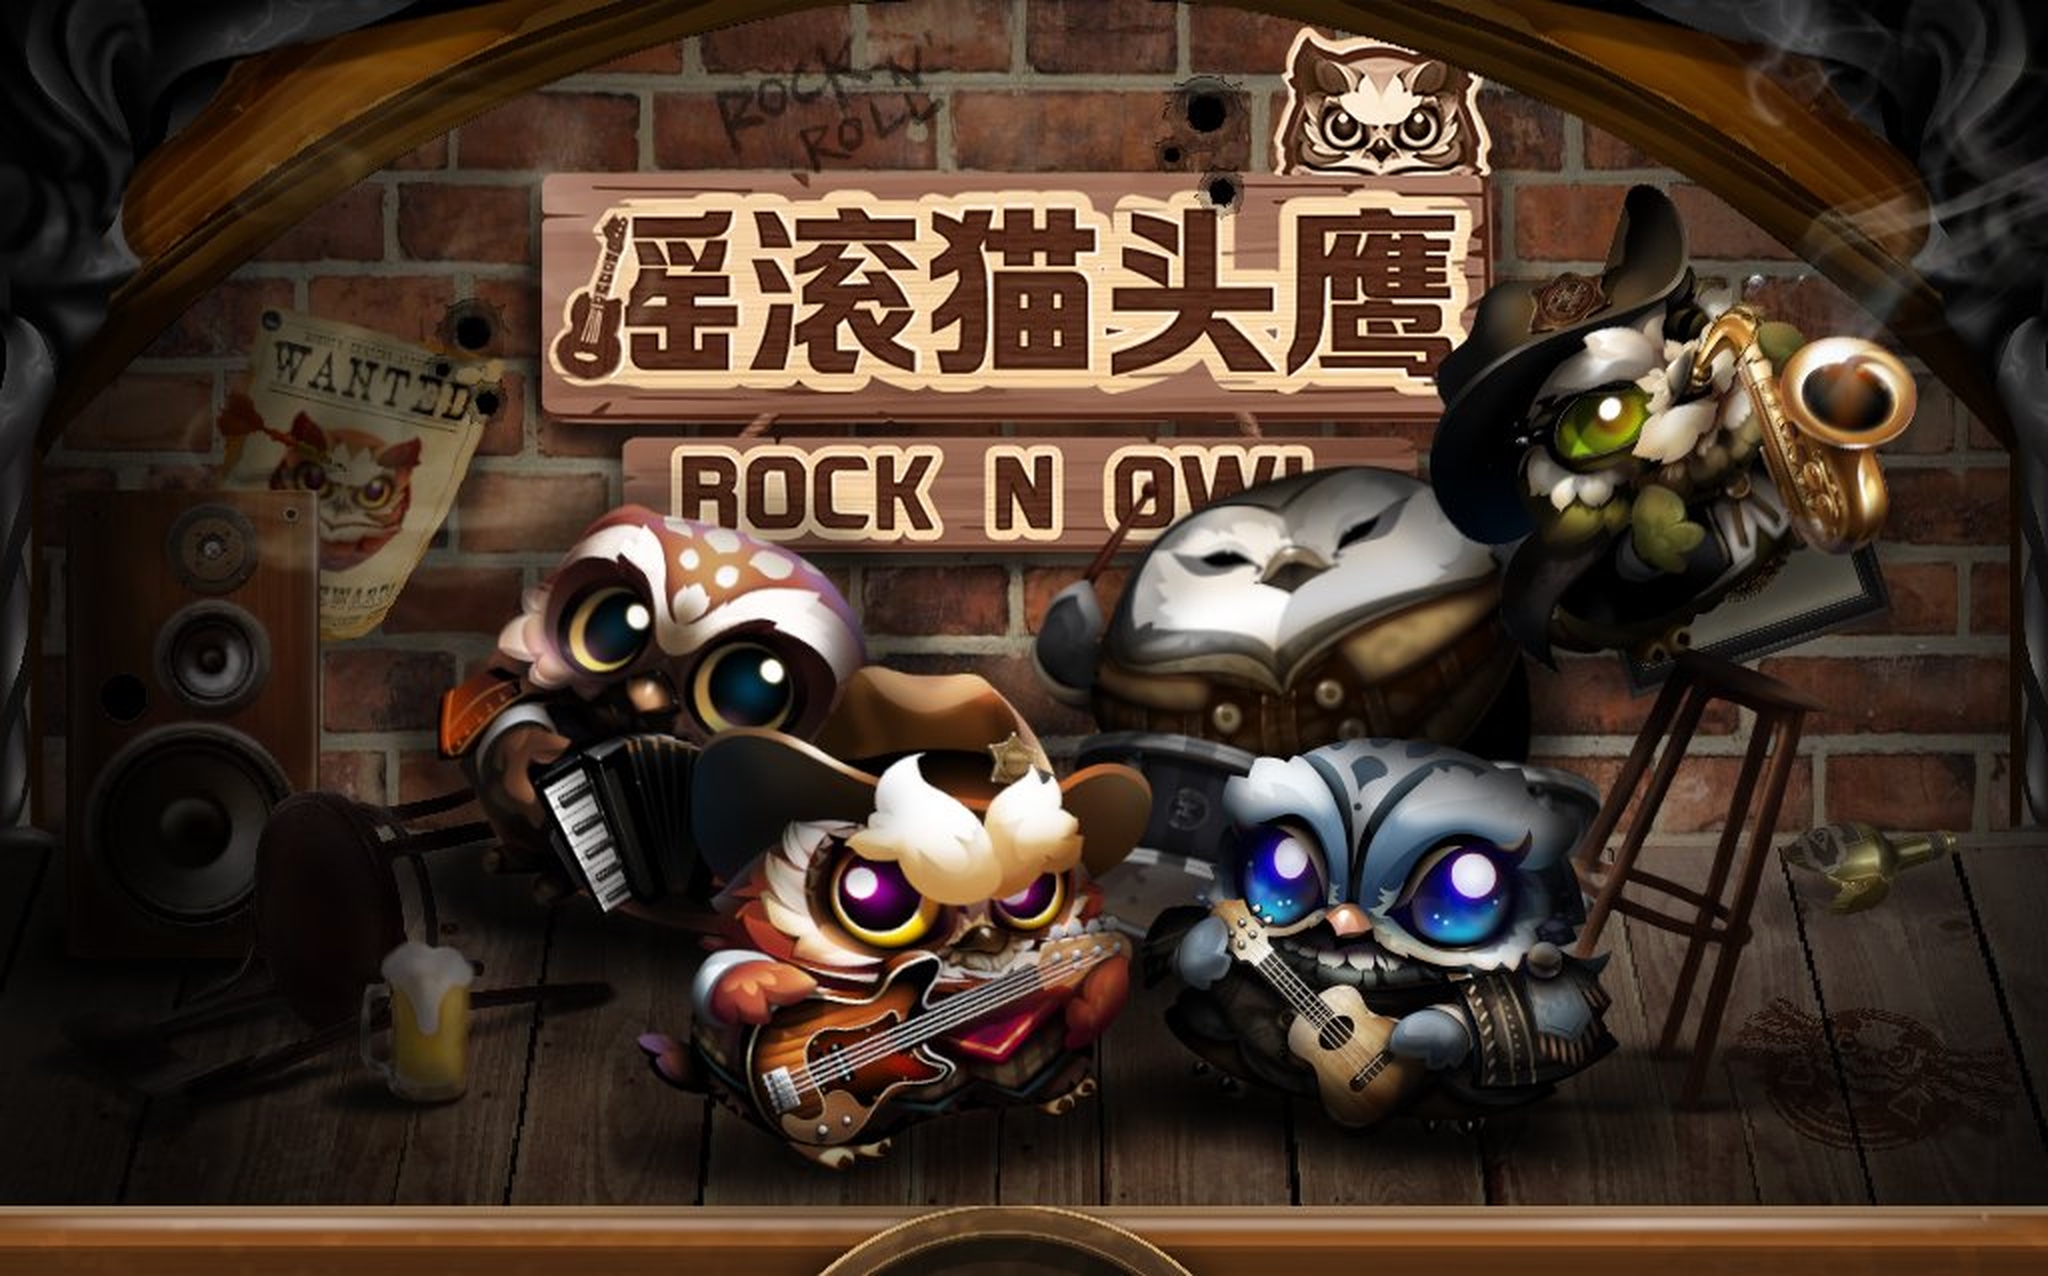 Rock N' Owl demo